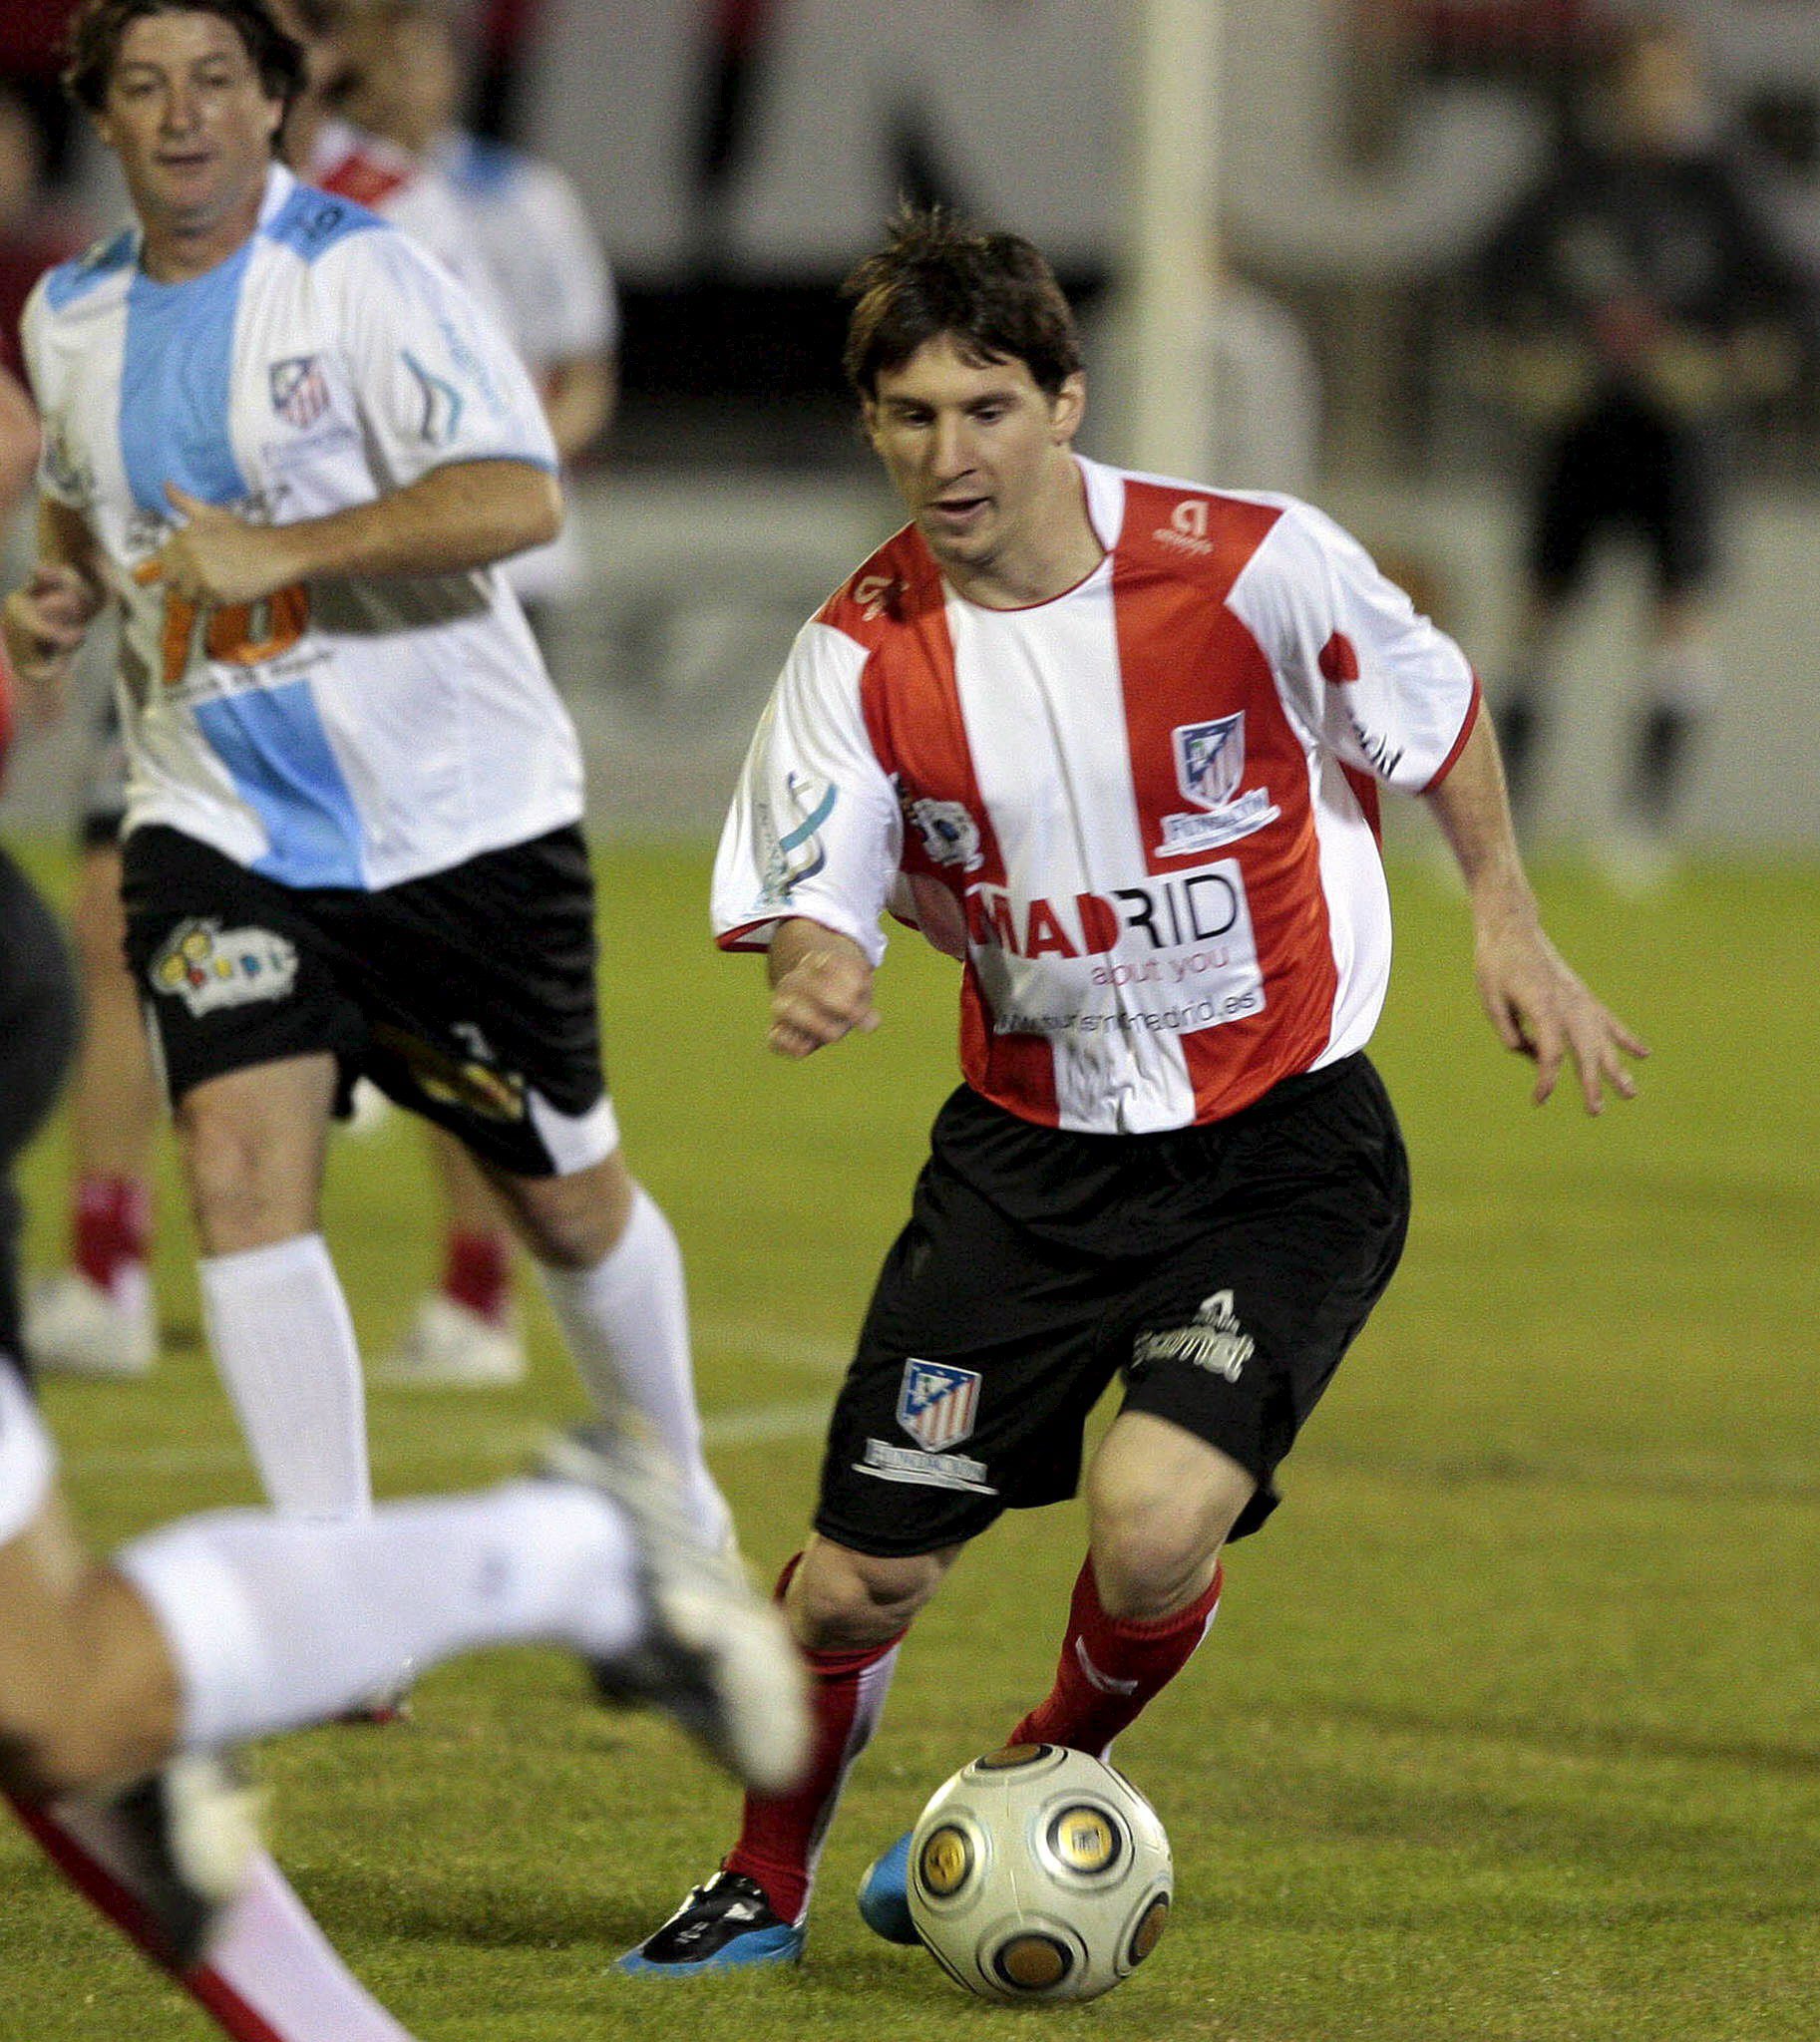 Foto: EPA. Messi speelde in 2009 nog een keer in het stadion van Newell's Old Boys waar zijn carrière begon.